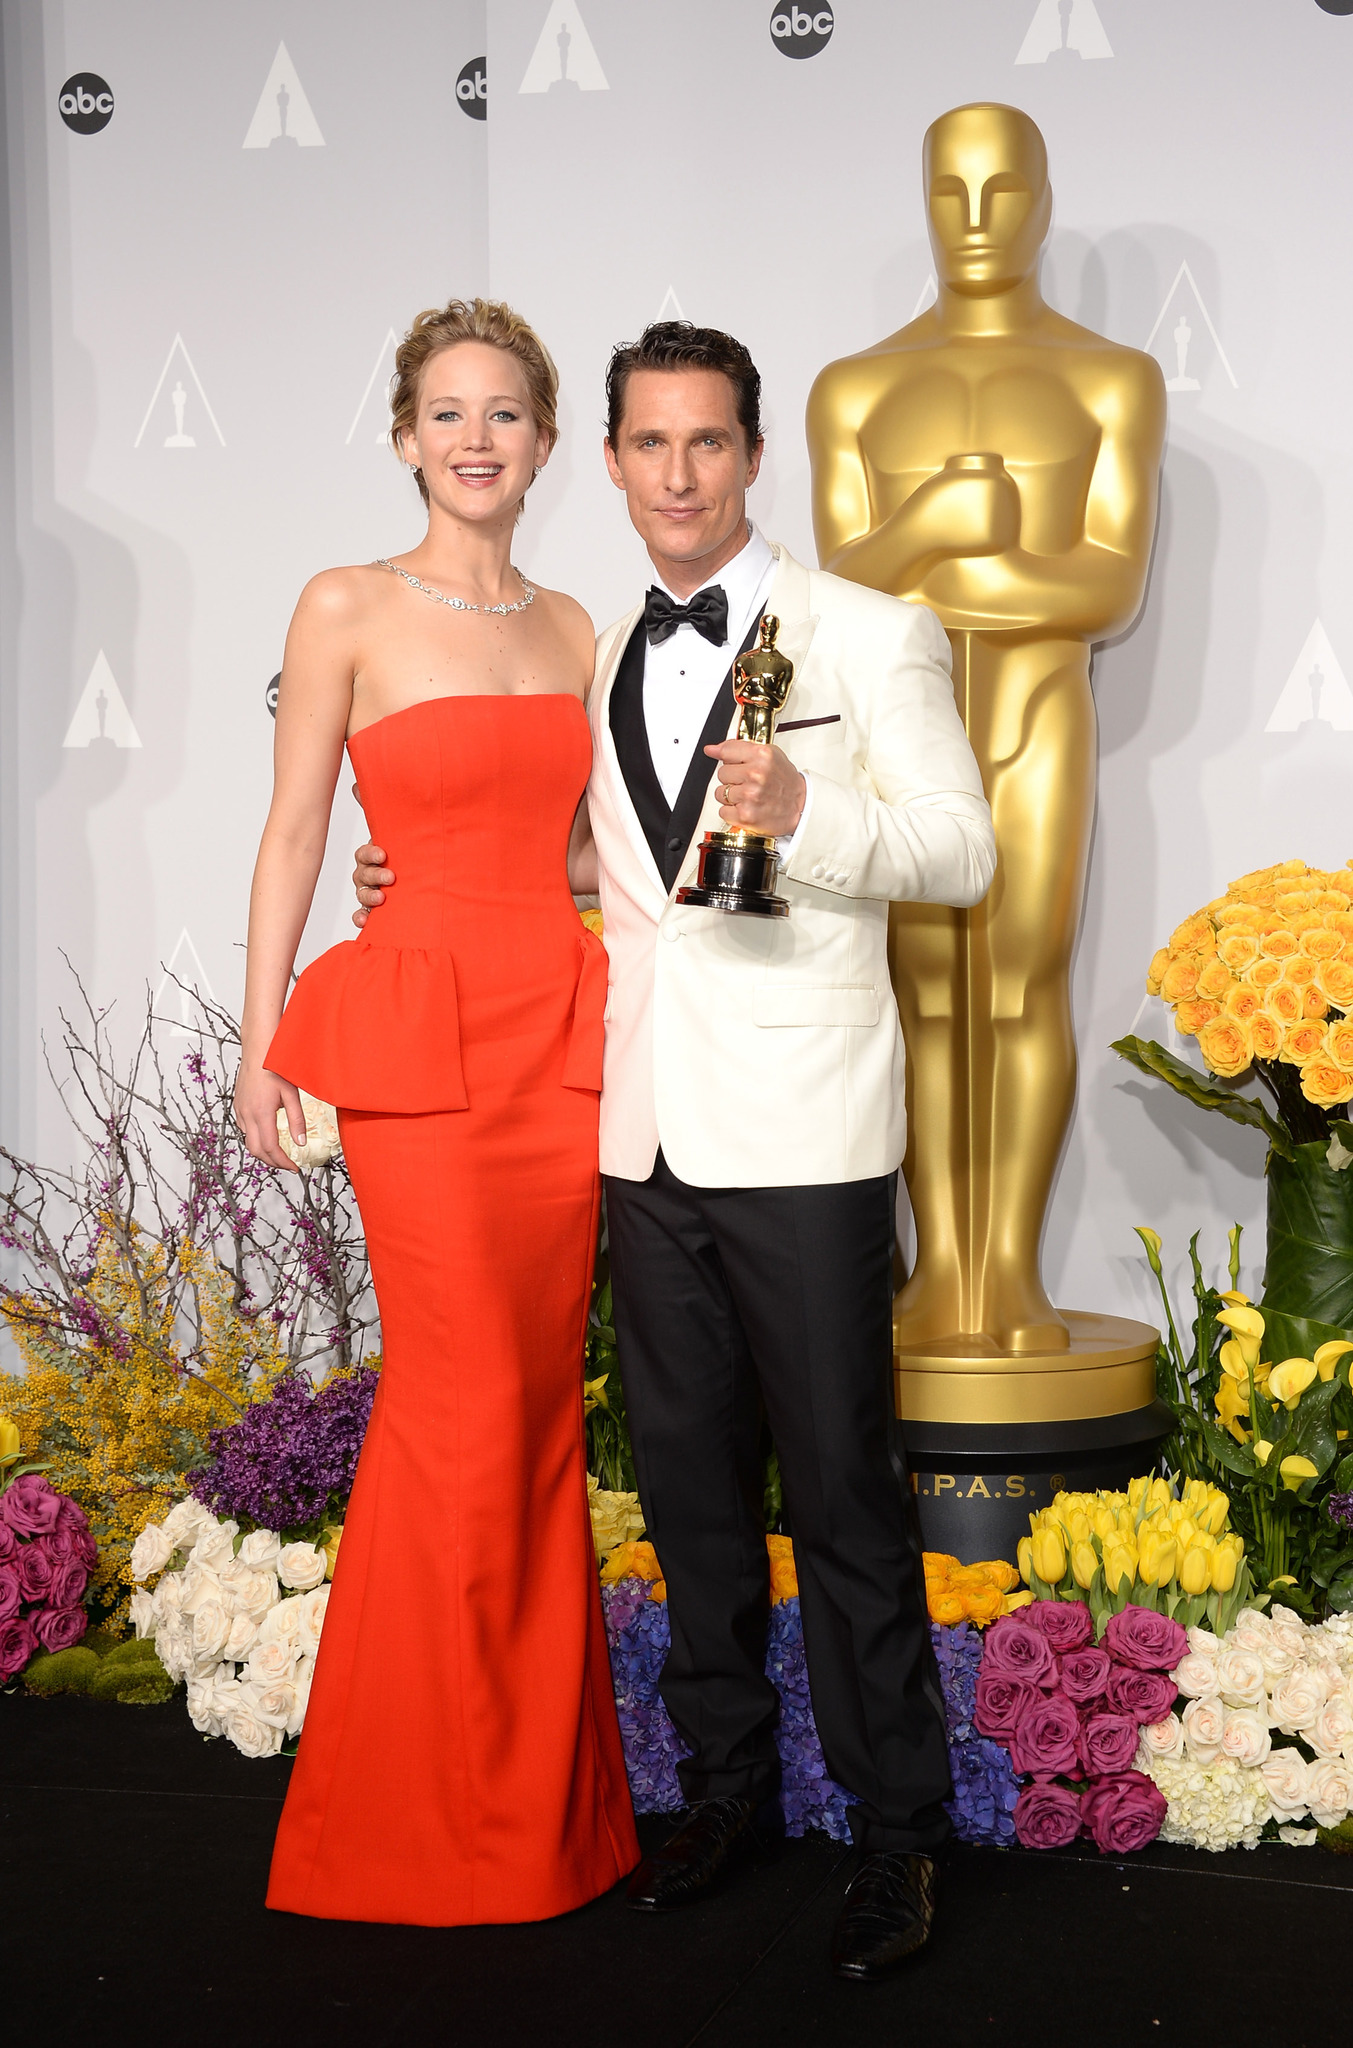 Matthew McConaughey and Jennifer Lawrence